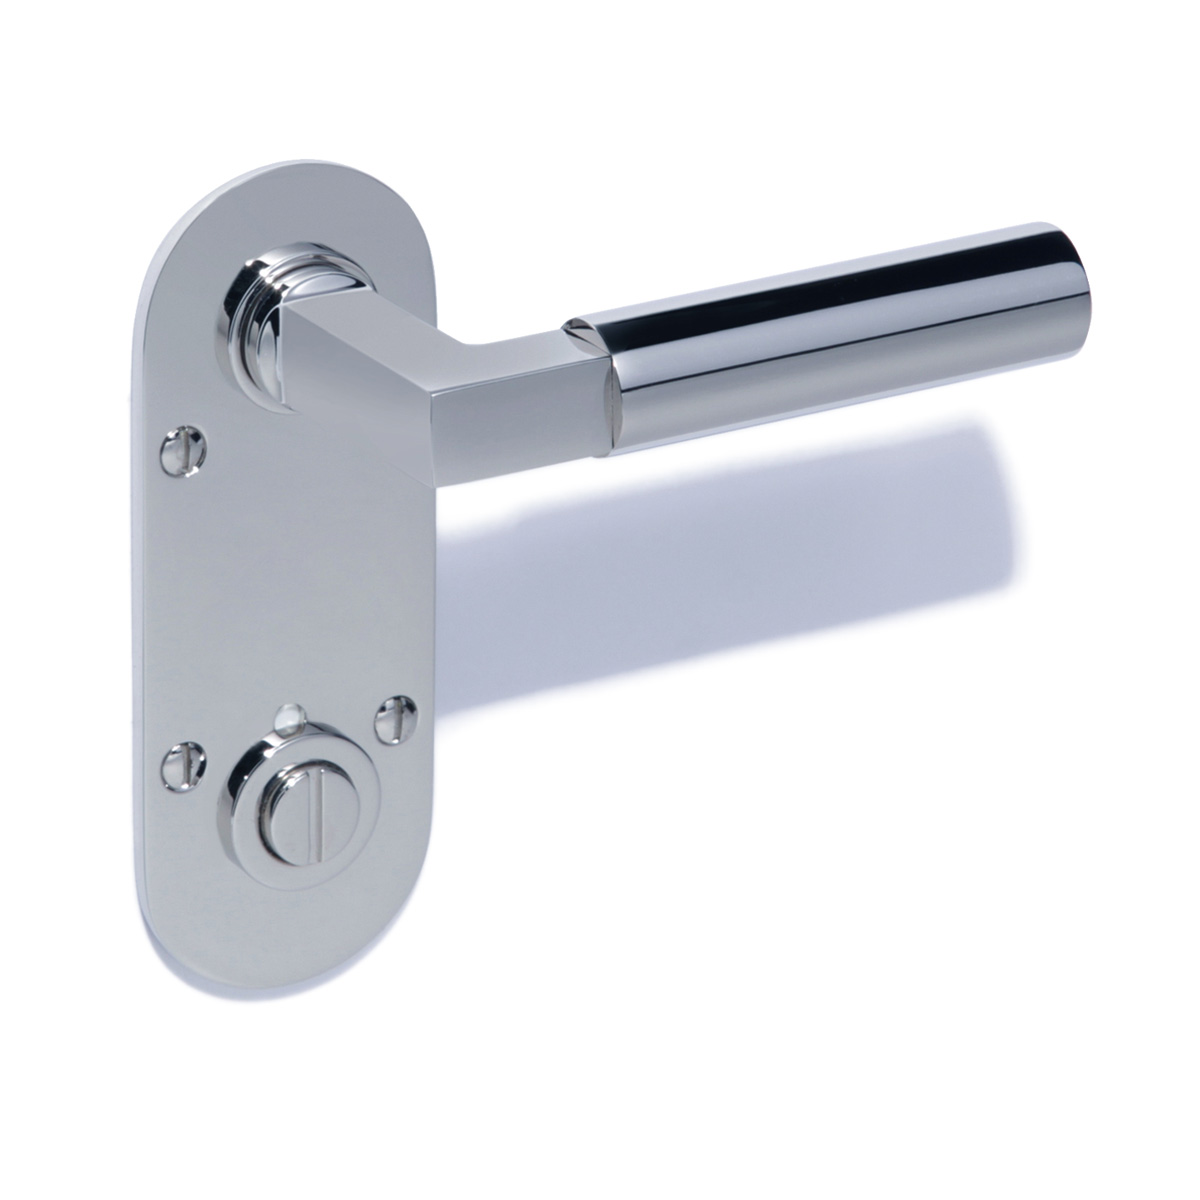 TL Gropius handle + rosette/lock | GENERAL VIEW